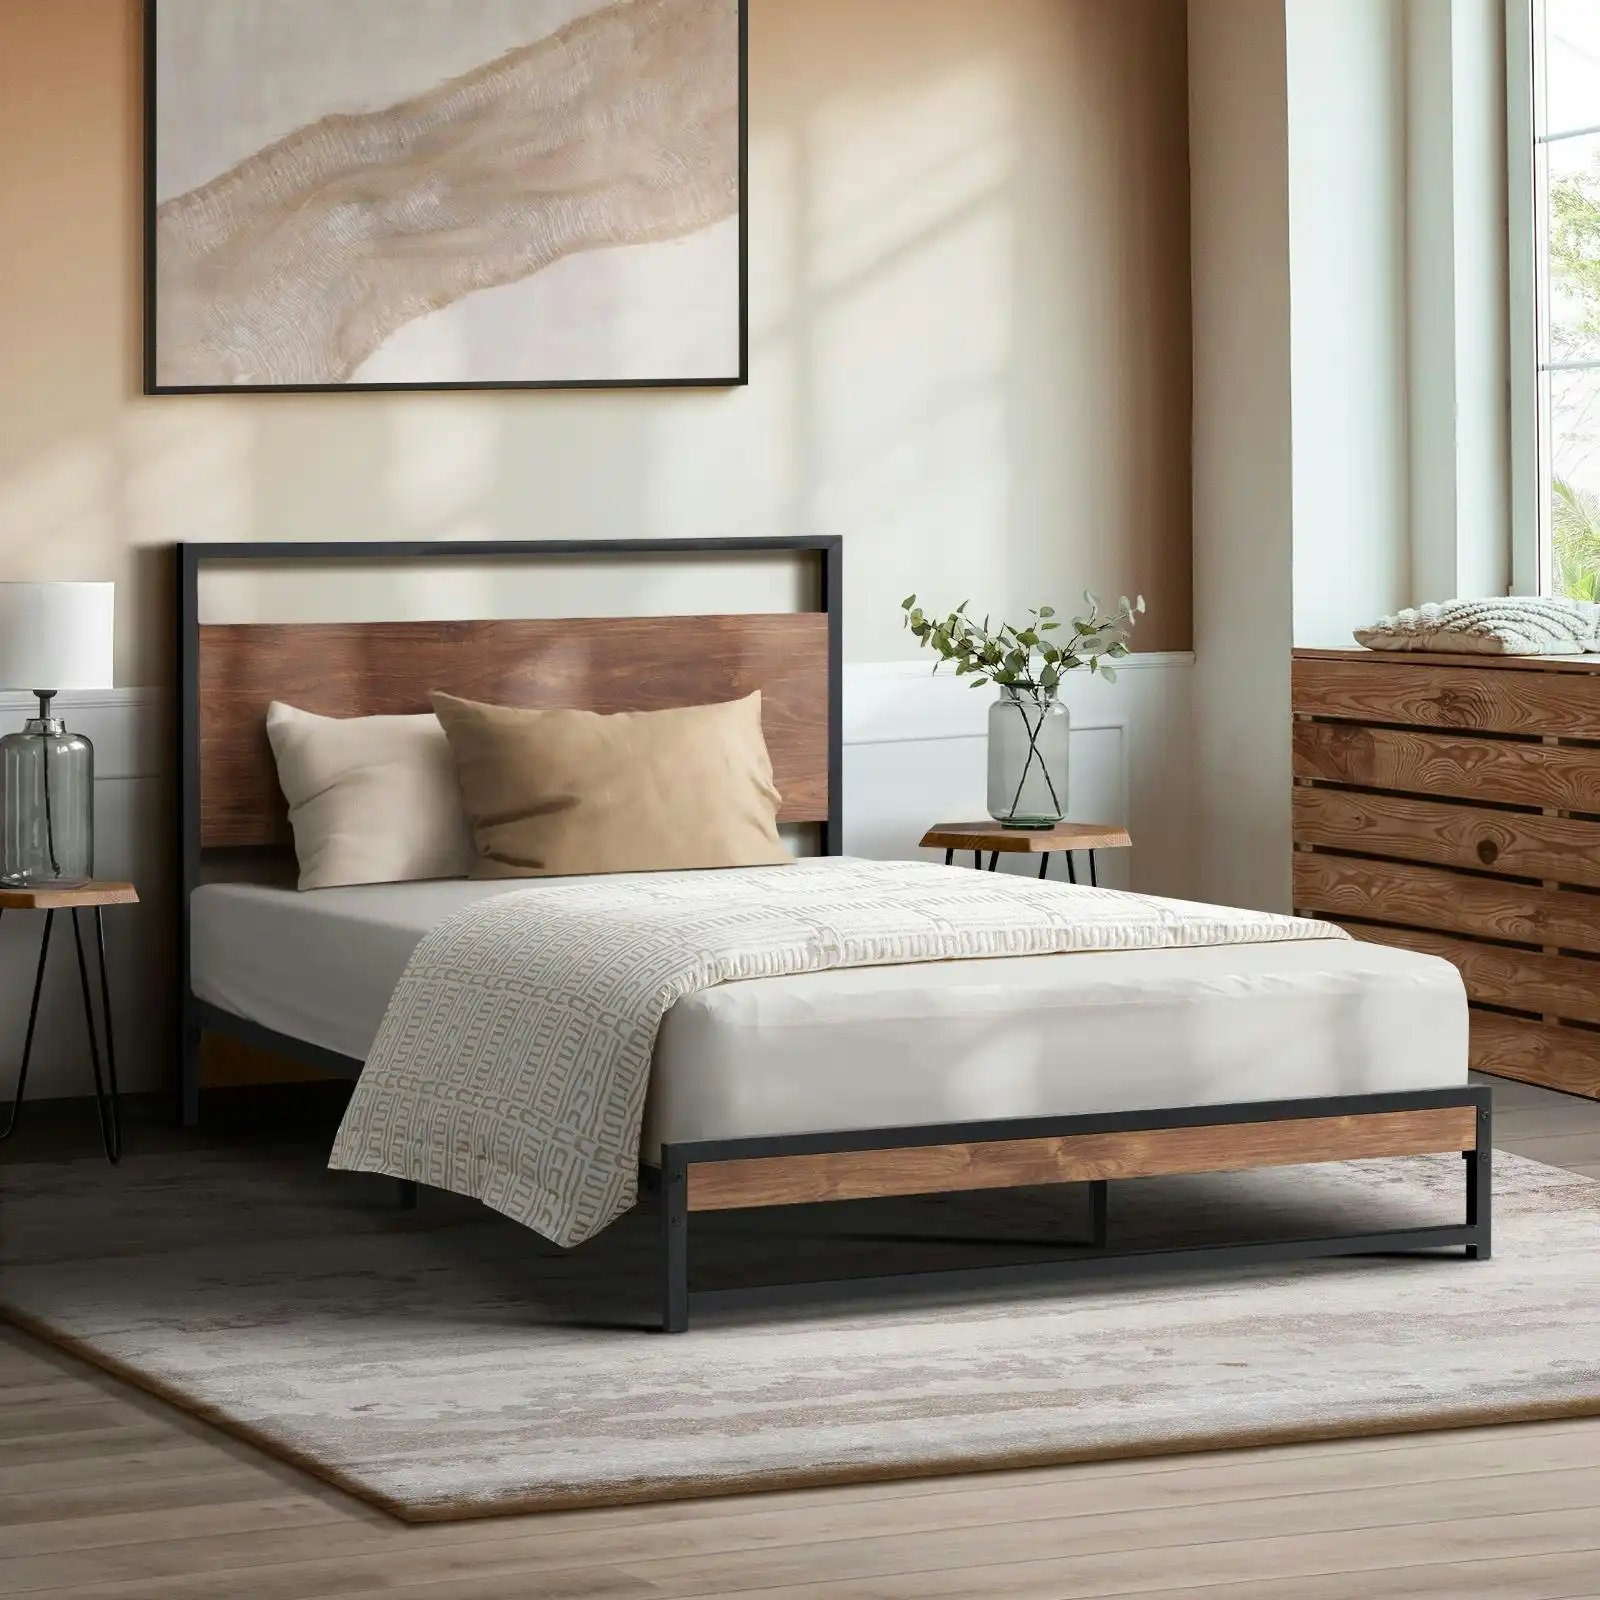 Oikiture Metal Bed Frame King Single Size Beds Base Platform Wood